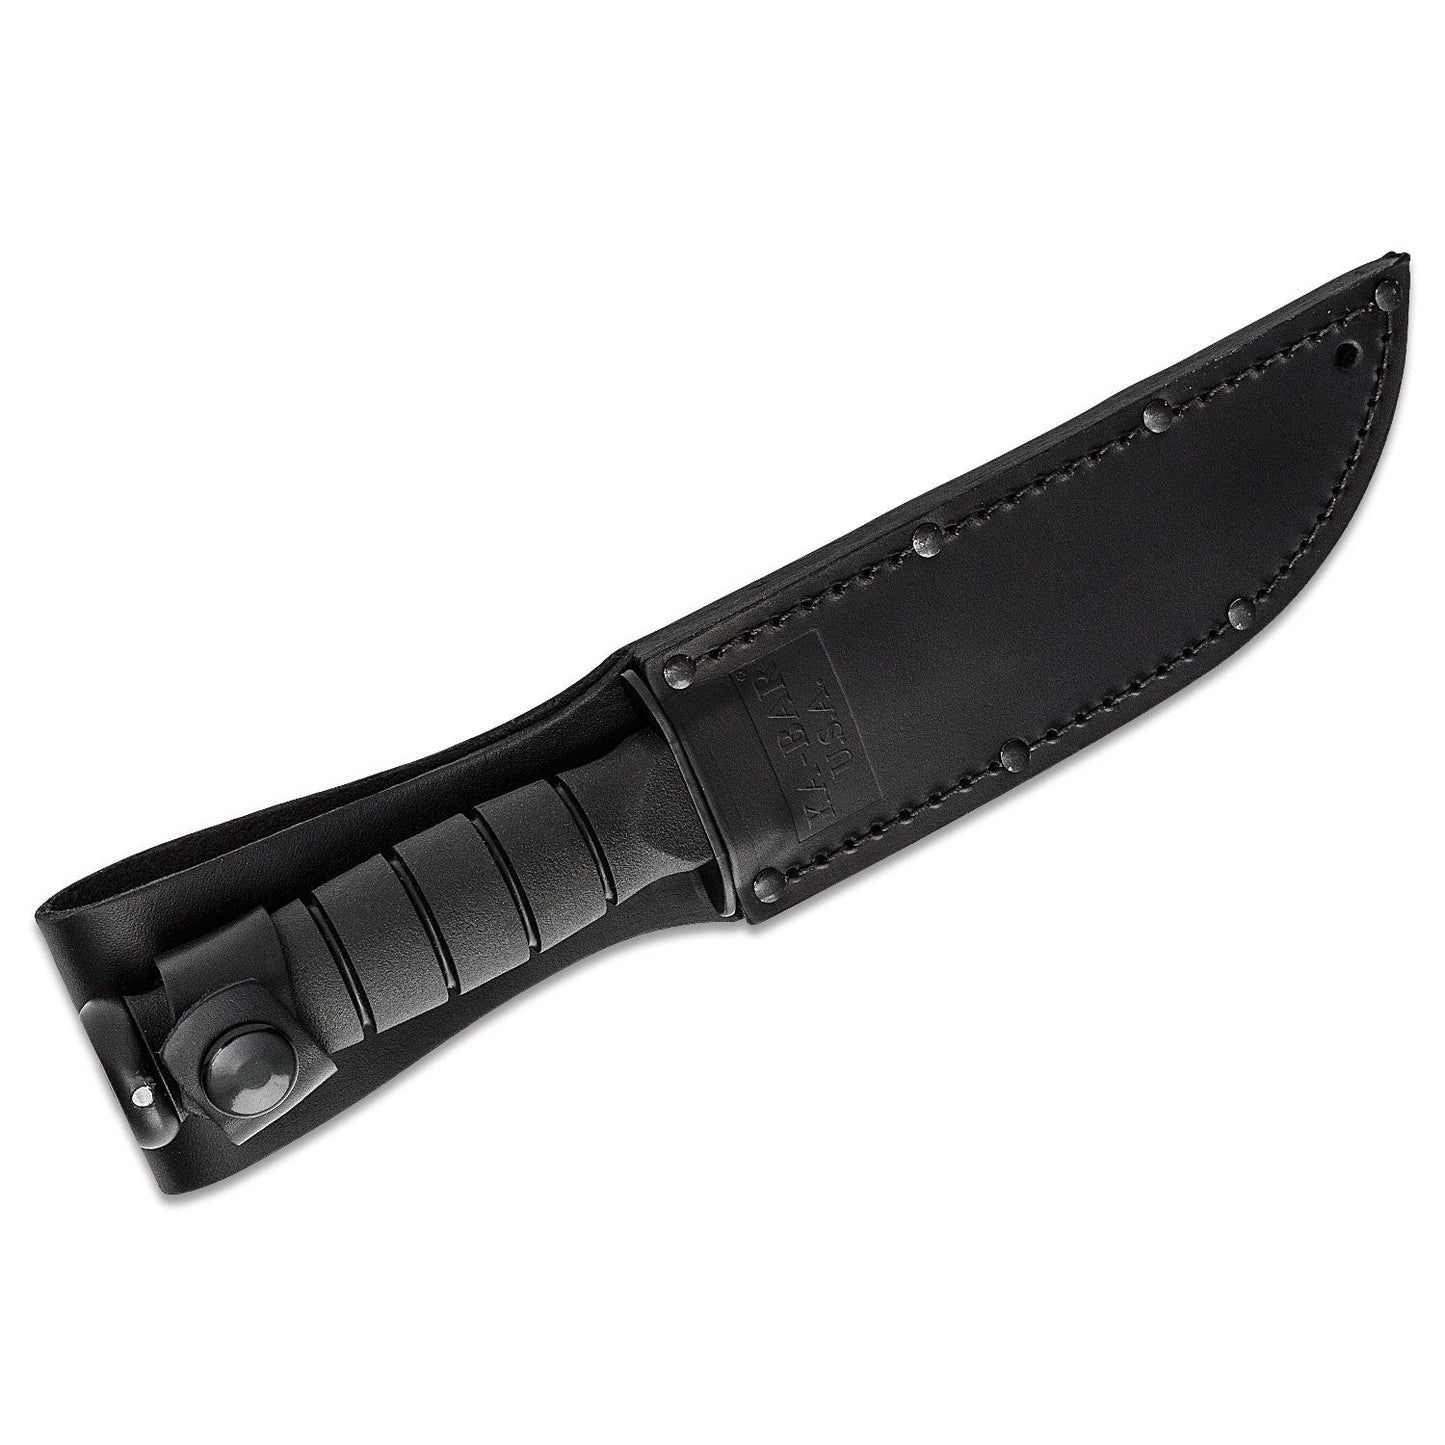 KA-BAR - Straight Edge Knife - Short Black